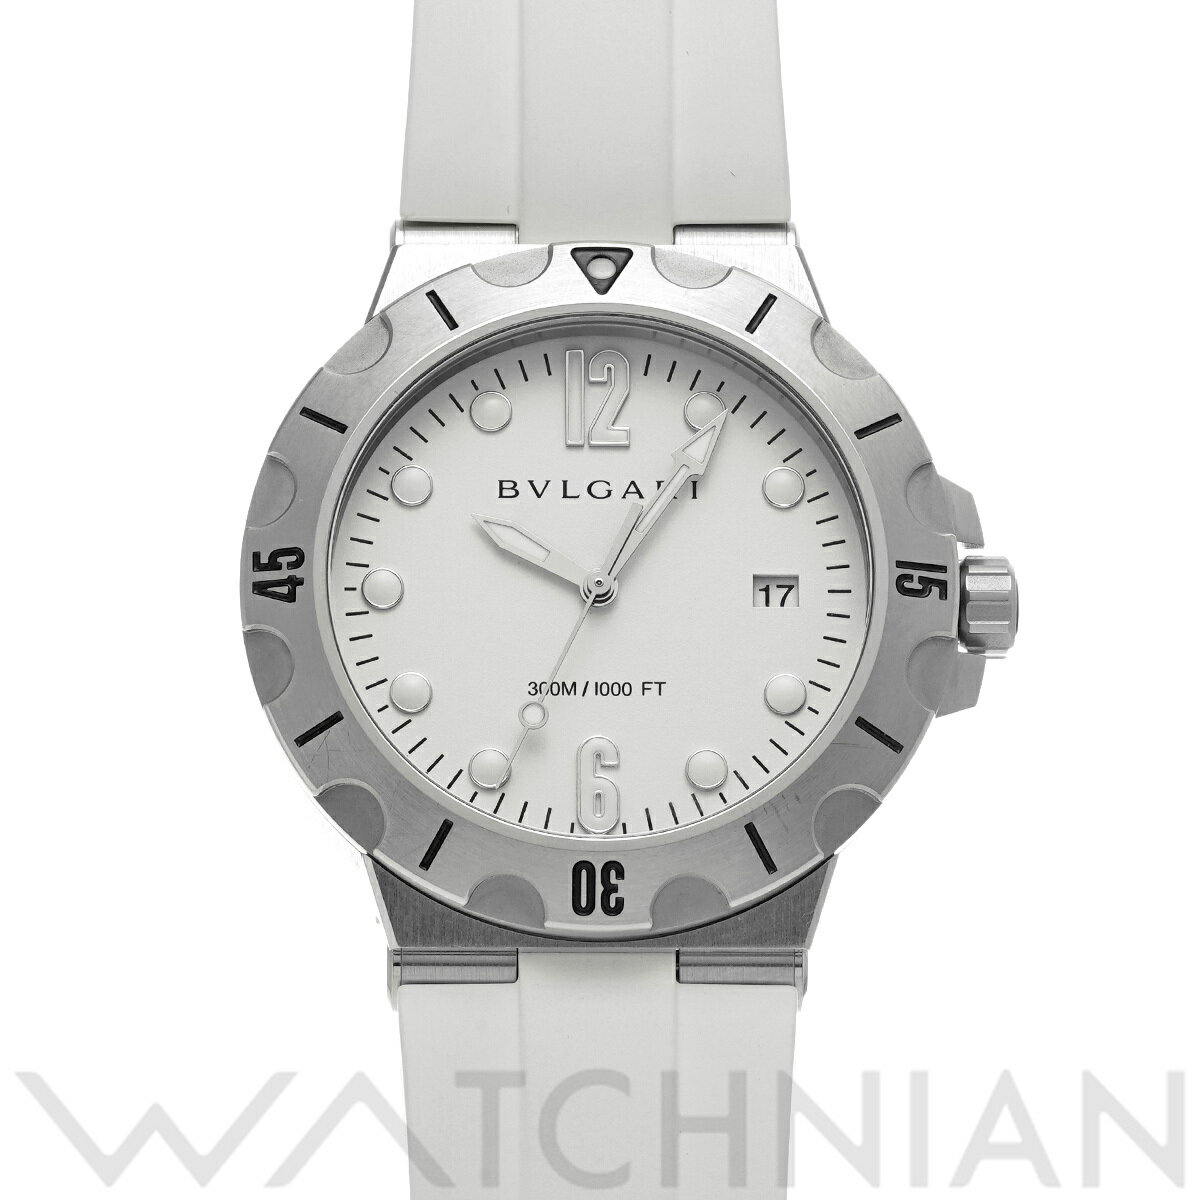 【ローン60回払い無金利】【中古】 ブルガリ BVLGARI ディアゴノ スクーバ DP41SSD ホワイト メンズ 腕時計 ブルガリ 時計 高級腕時計 ブランド その1